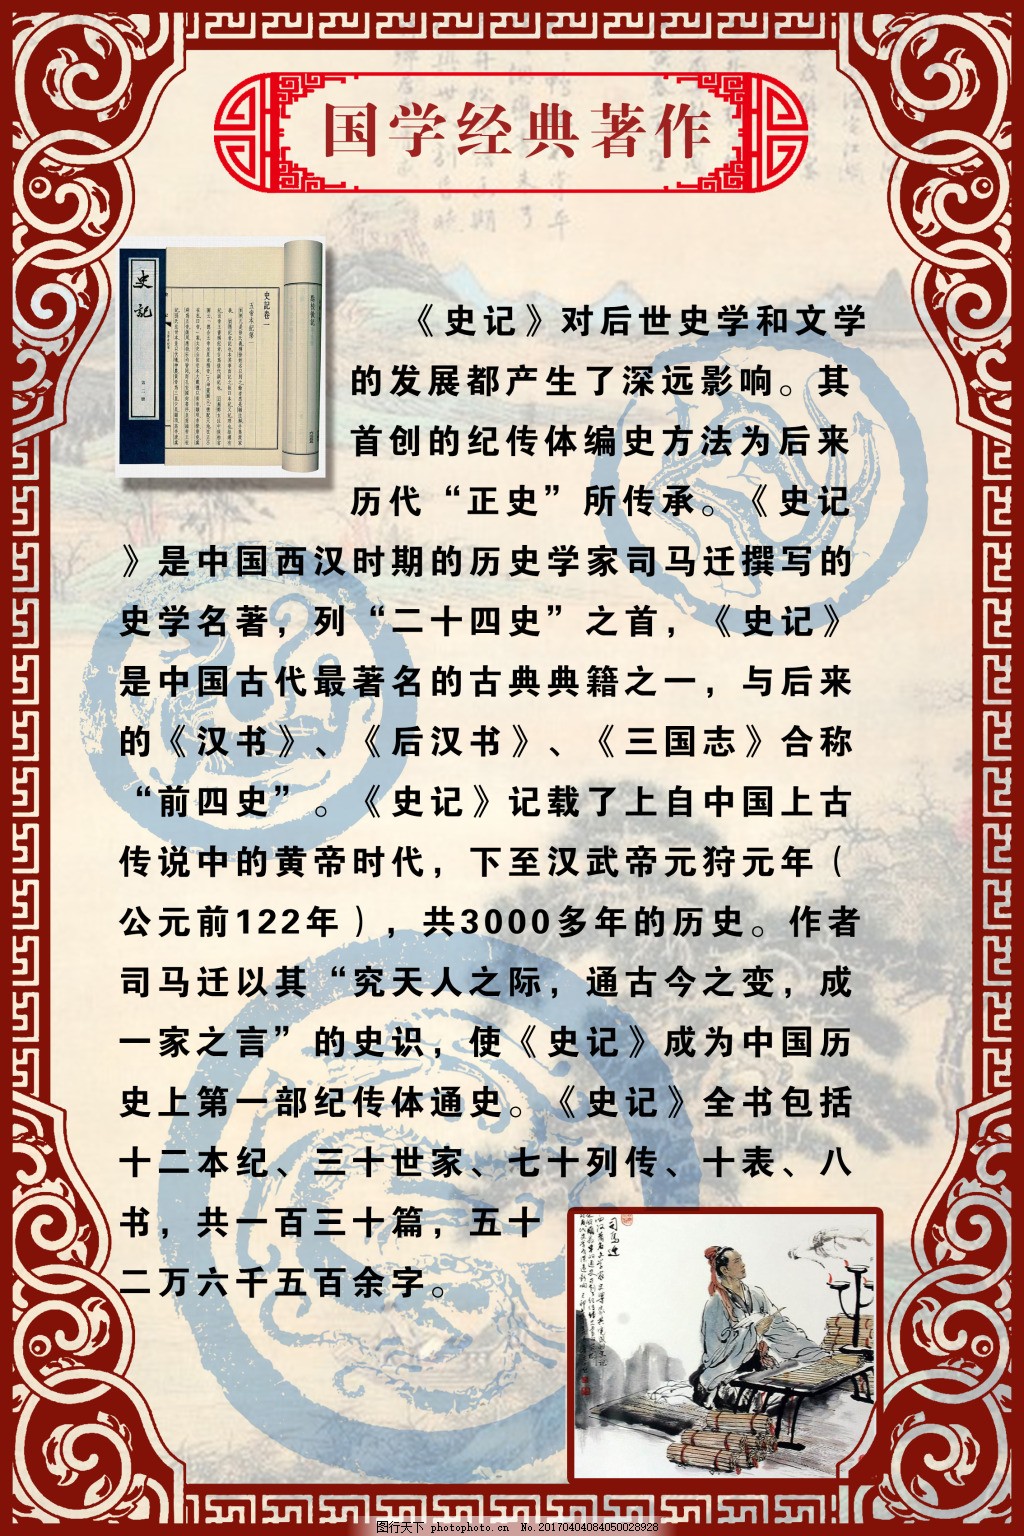 史记企业展板,中国经典文学 国学经典著作 文化